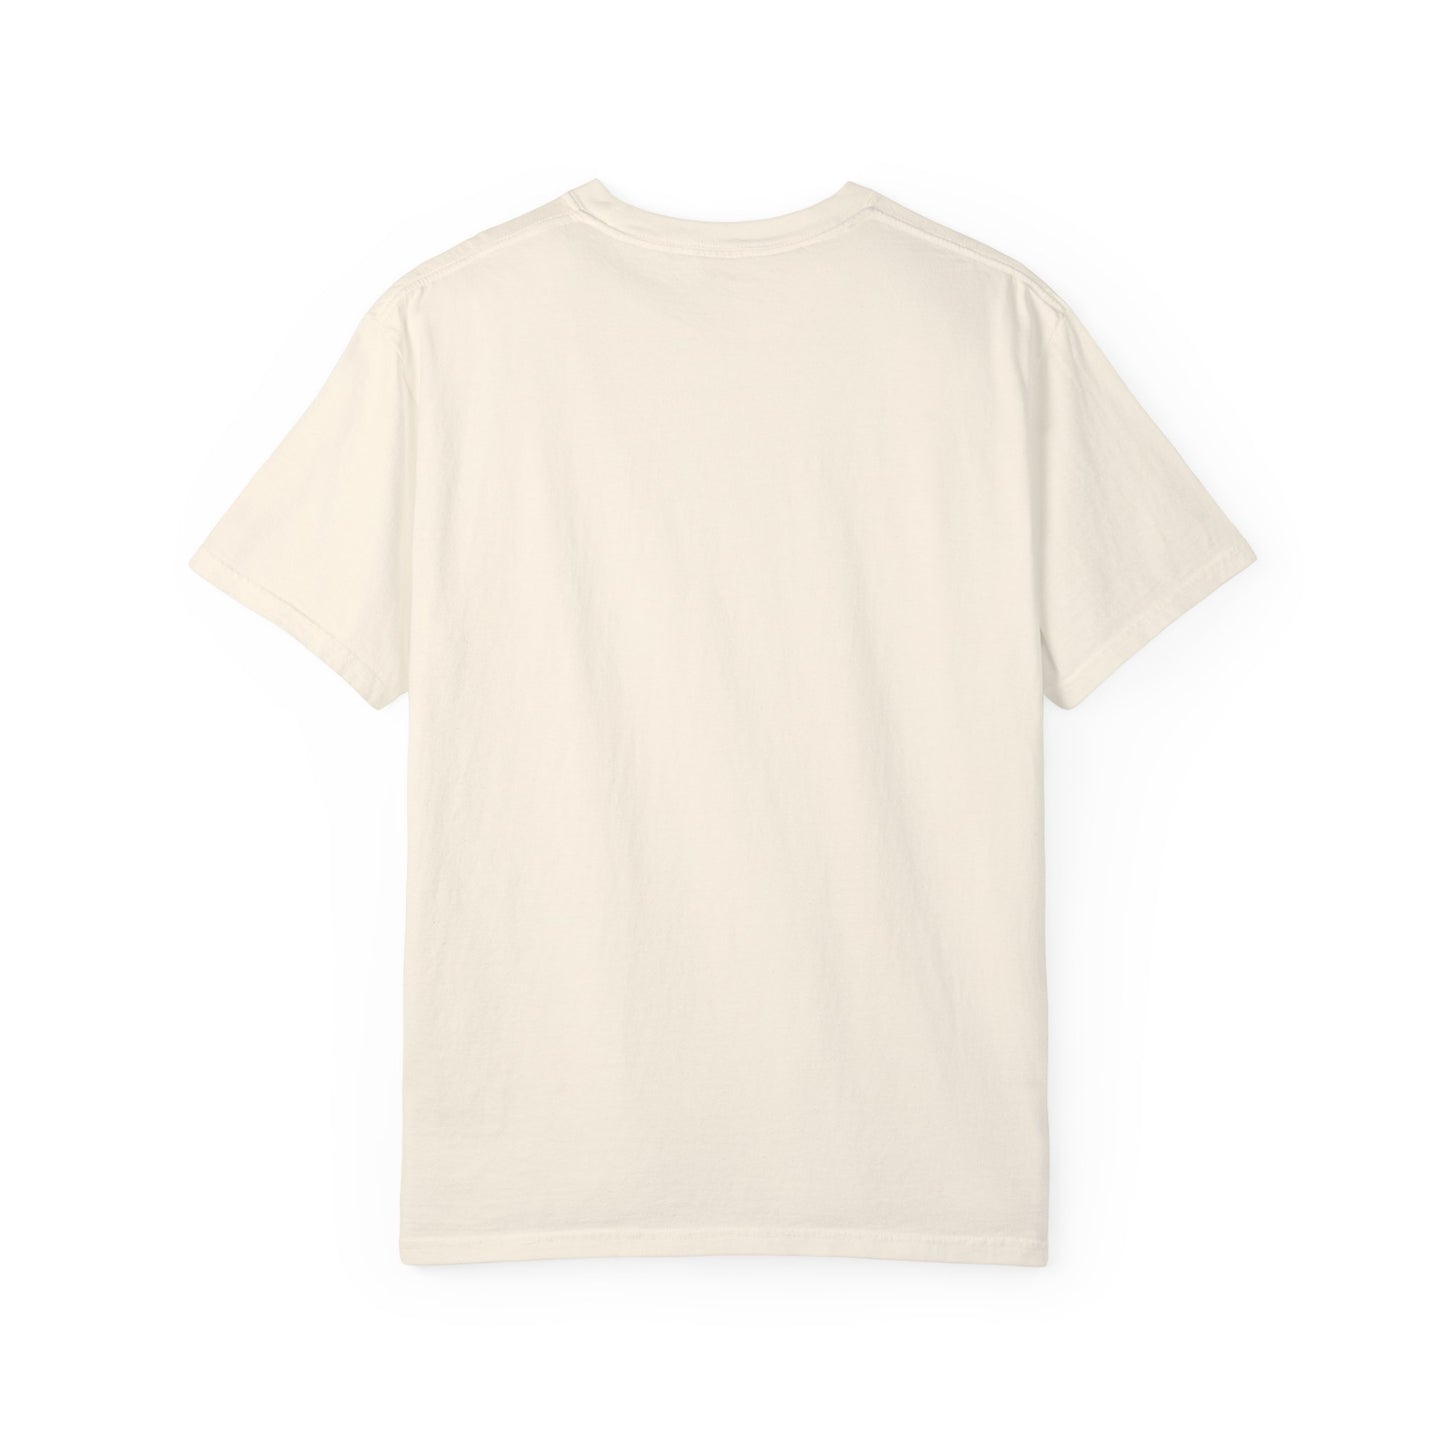 Gone Fishing Unisex Garment-Dyed T-shirt